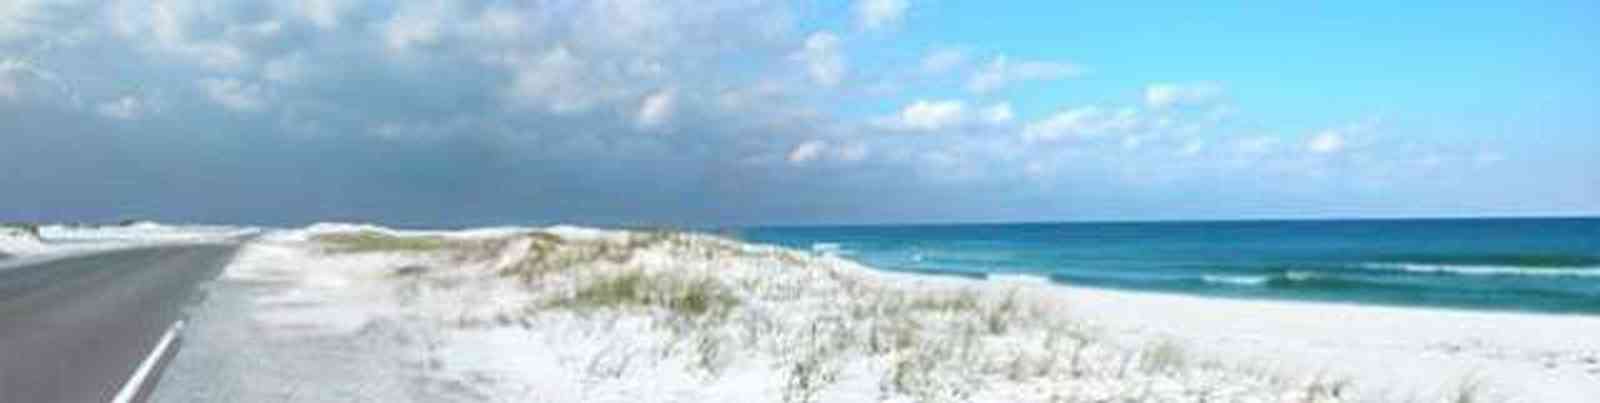 Pensacola-Beach:-Road_09.jpg:  pensacola beach, dunes, sand, white sand, beach road hurricane